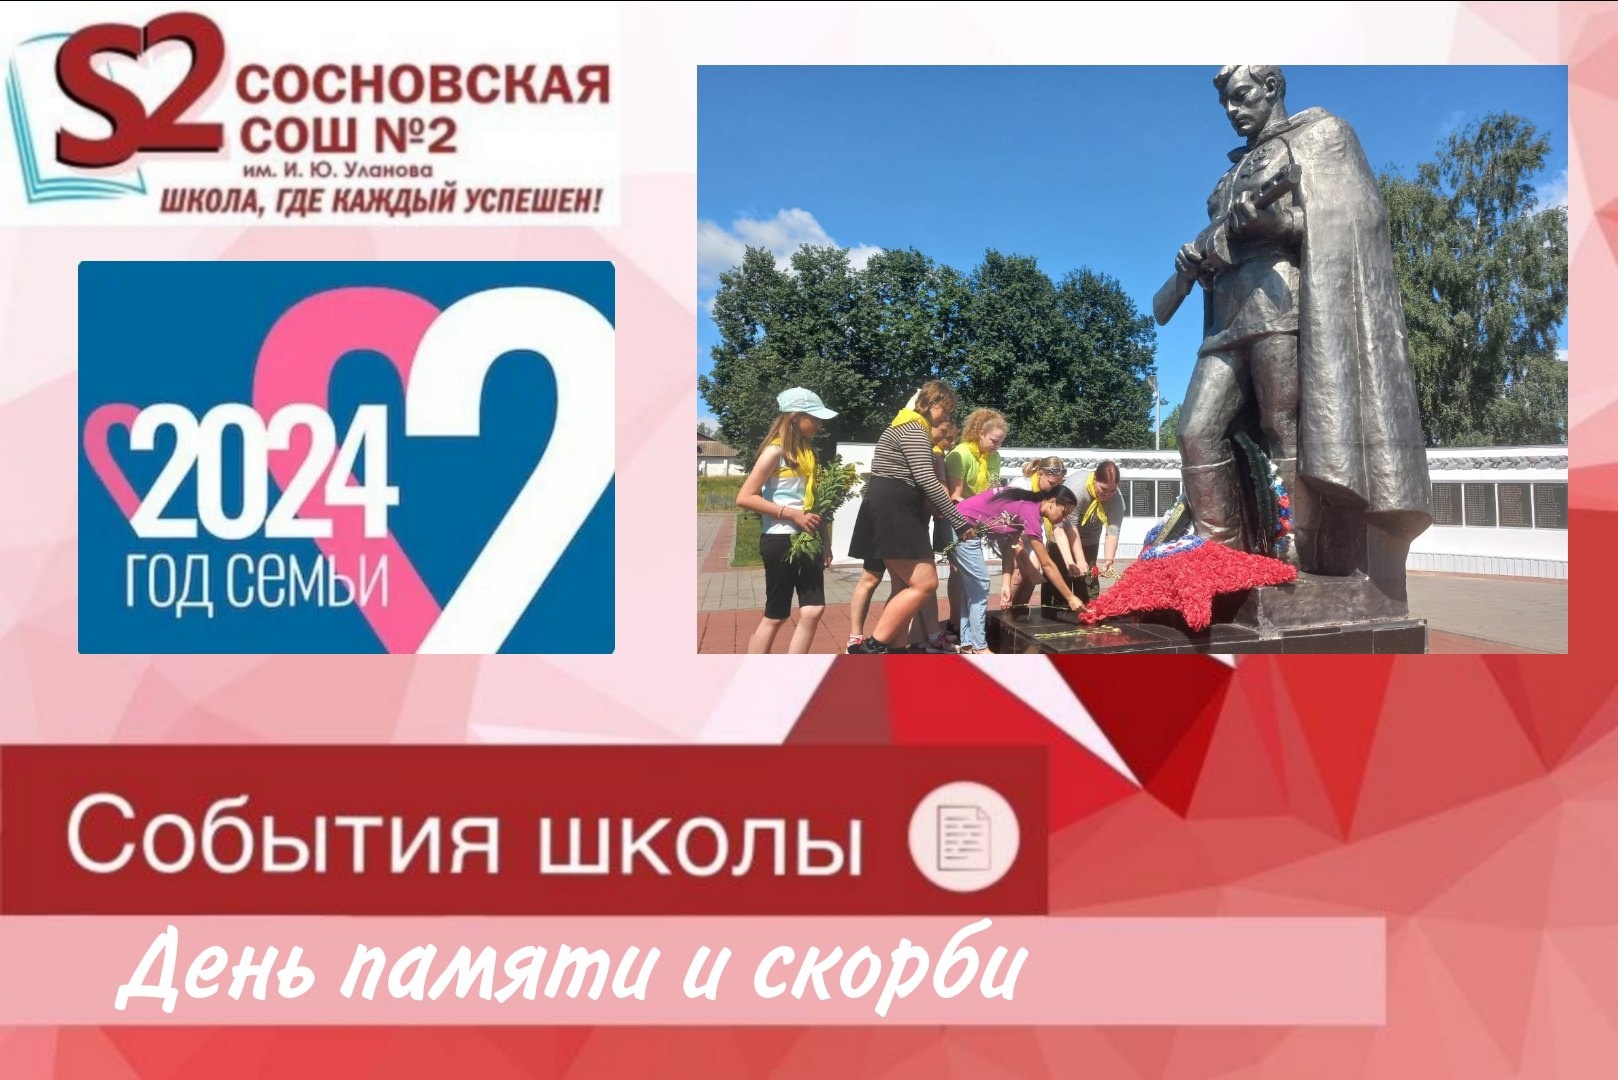 22 июня, в День памяти и скорби, по всей стране проходит Всероссийская акция ..